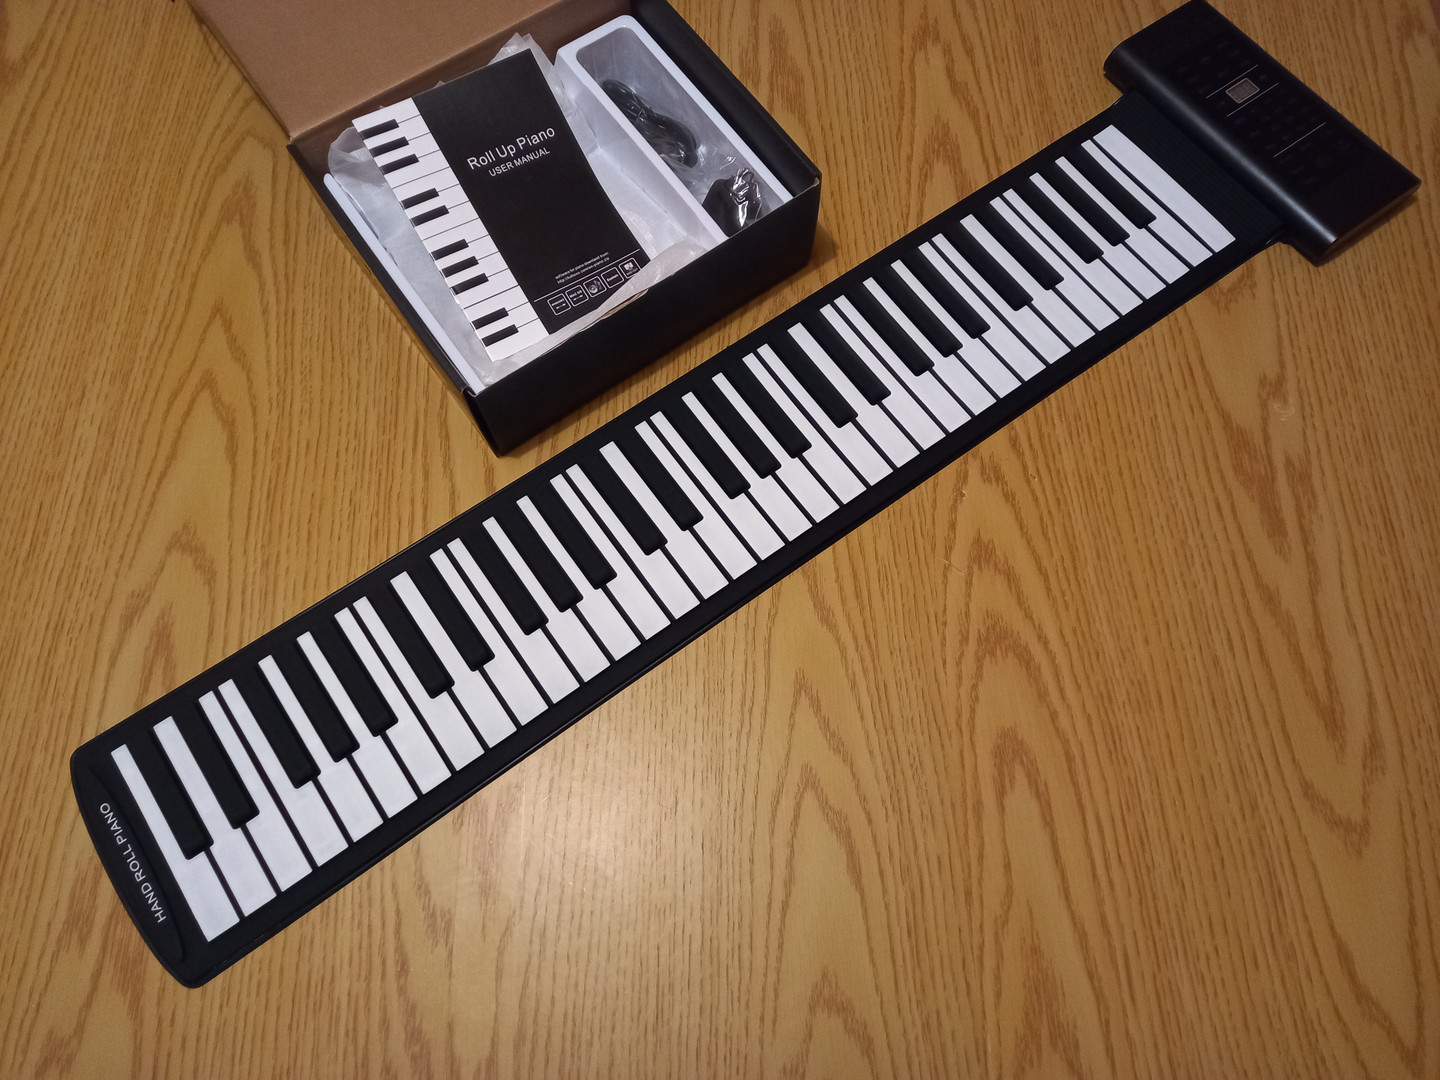 instrumentos musicales - Piano Teclado electrónico plegable 5 octavas.
